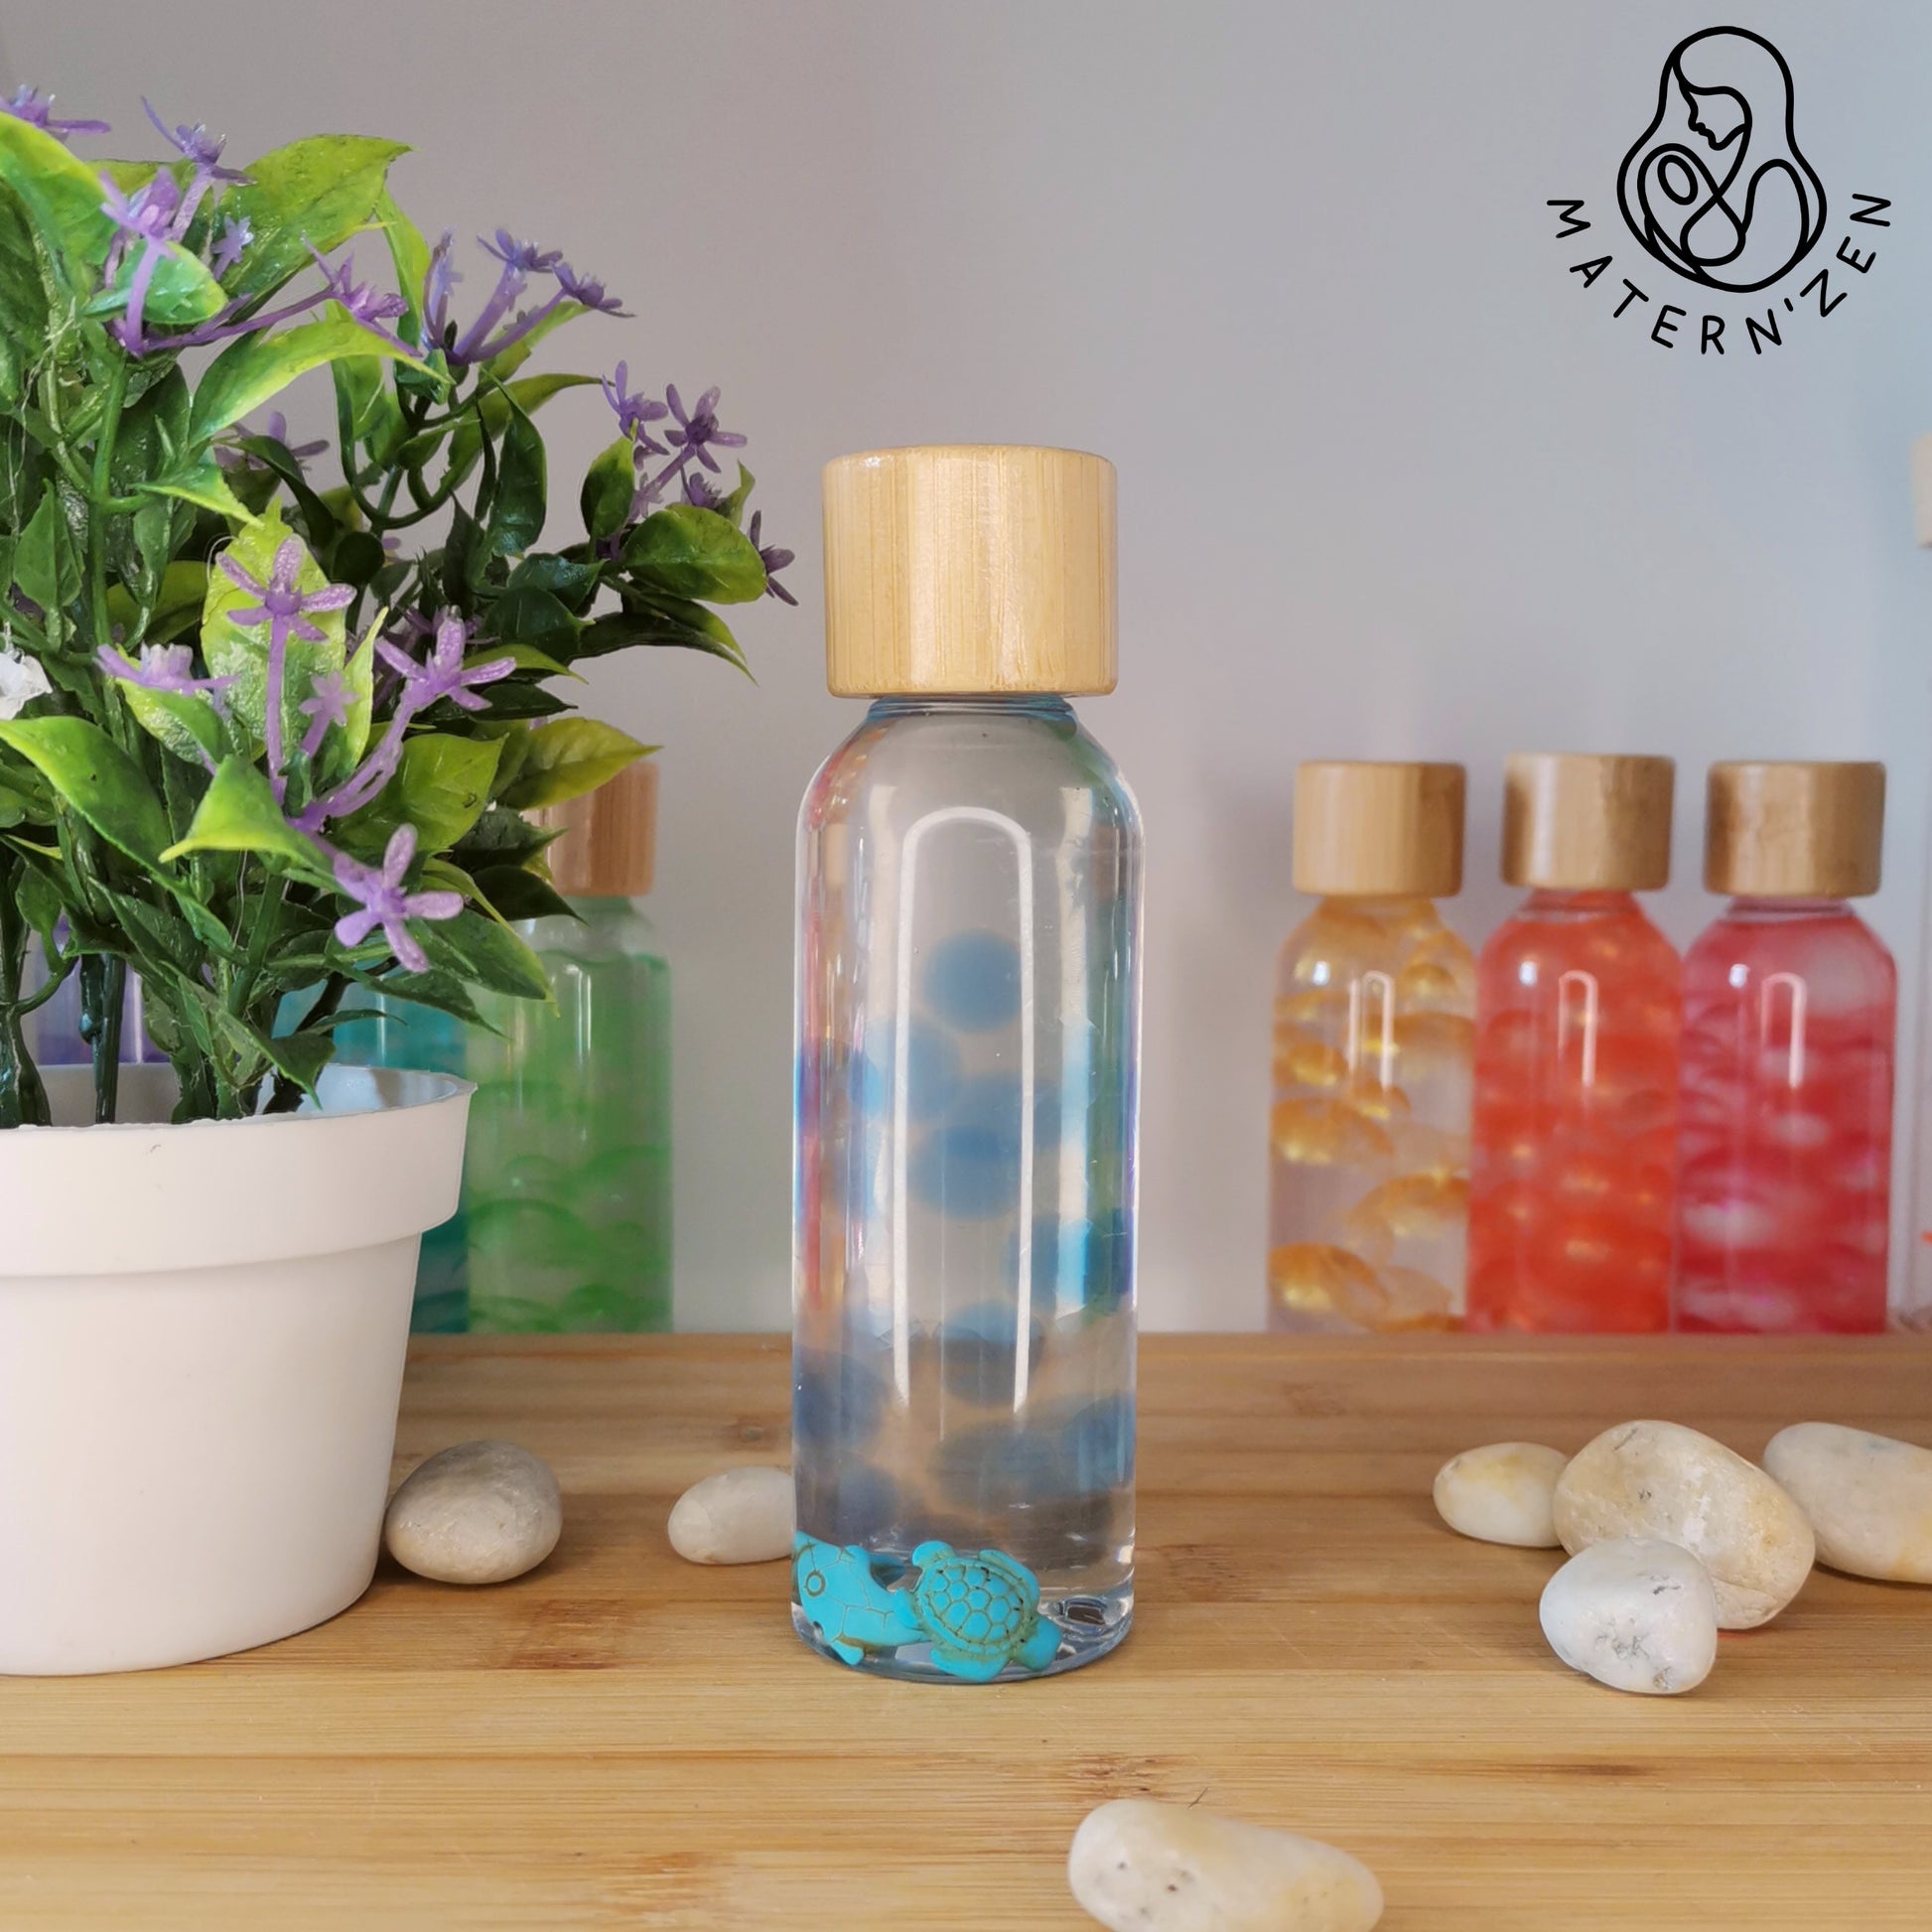 Peke's - ♥️💙BOTELLA SENSORIAL💙♥️ 📌 Llamado también frasco de la calma 📌  Dirigidos a niños en edad preescolar e infantil, son unas simples botellas  de plástico 🧴, que se llenan de objetos